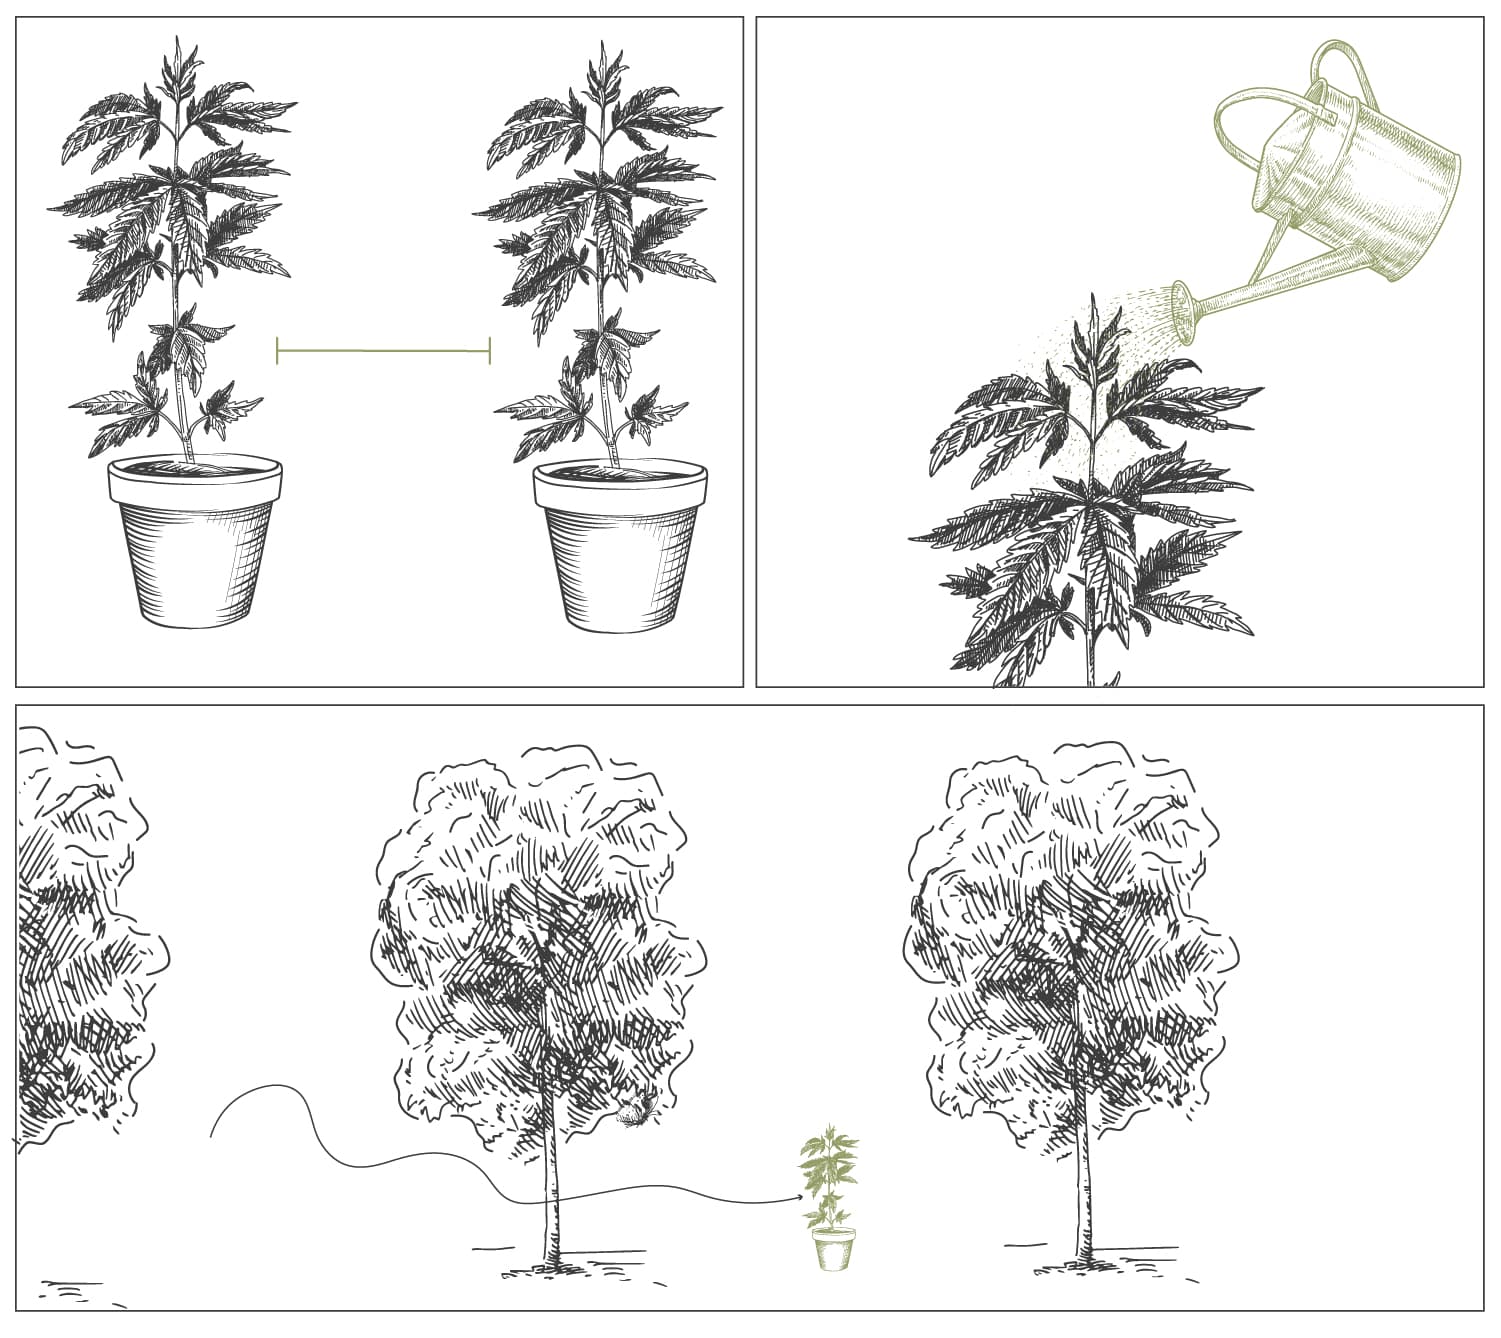 Comment les champignons mycorhizes aide vos plants de cannabis à s'épanouir